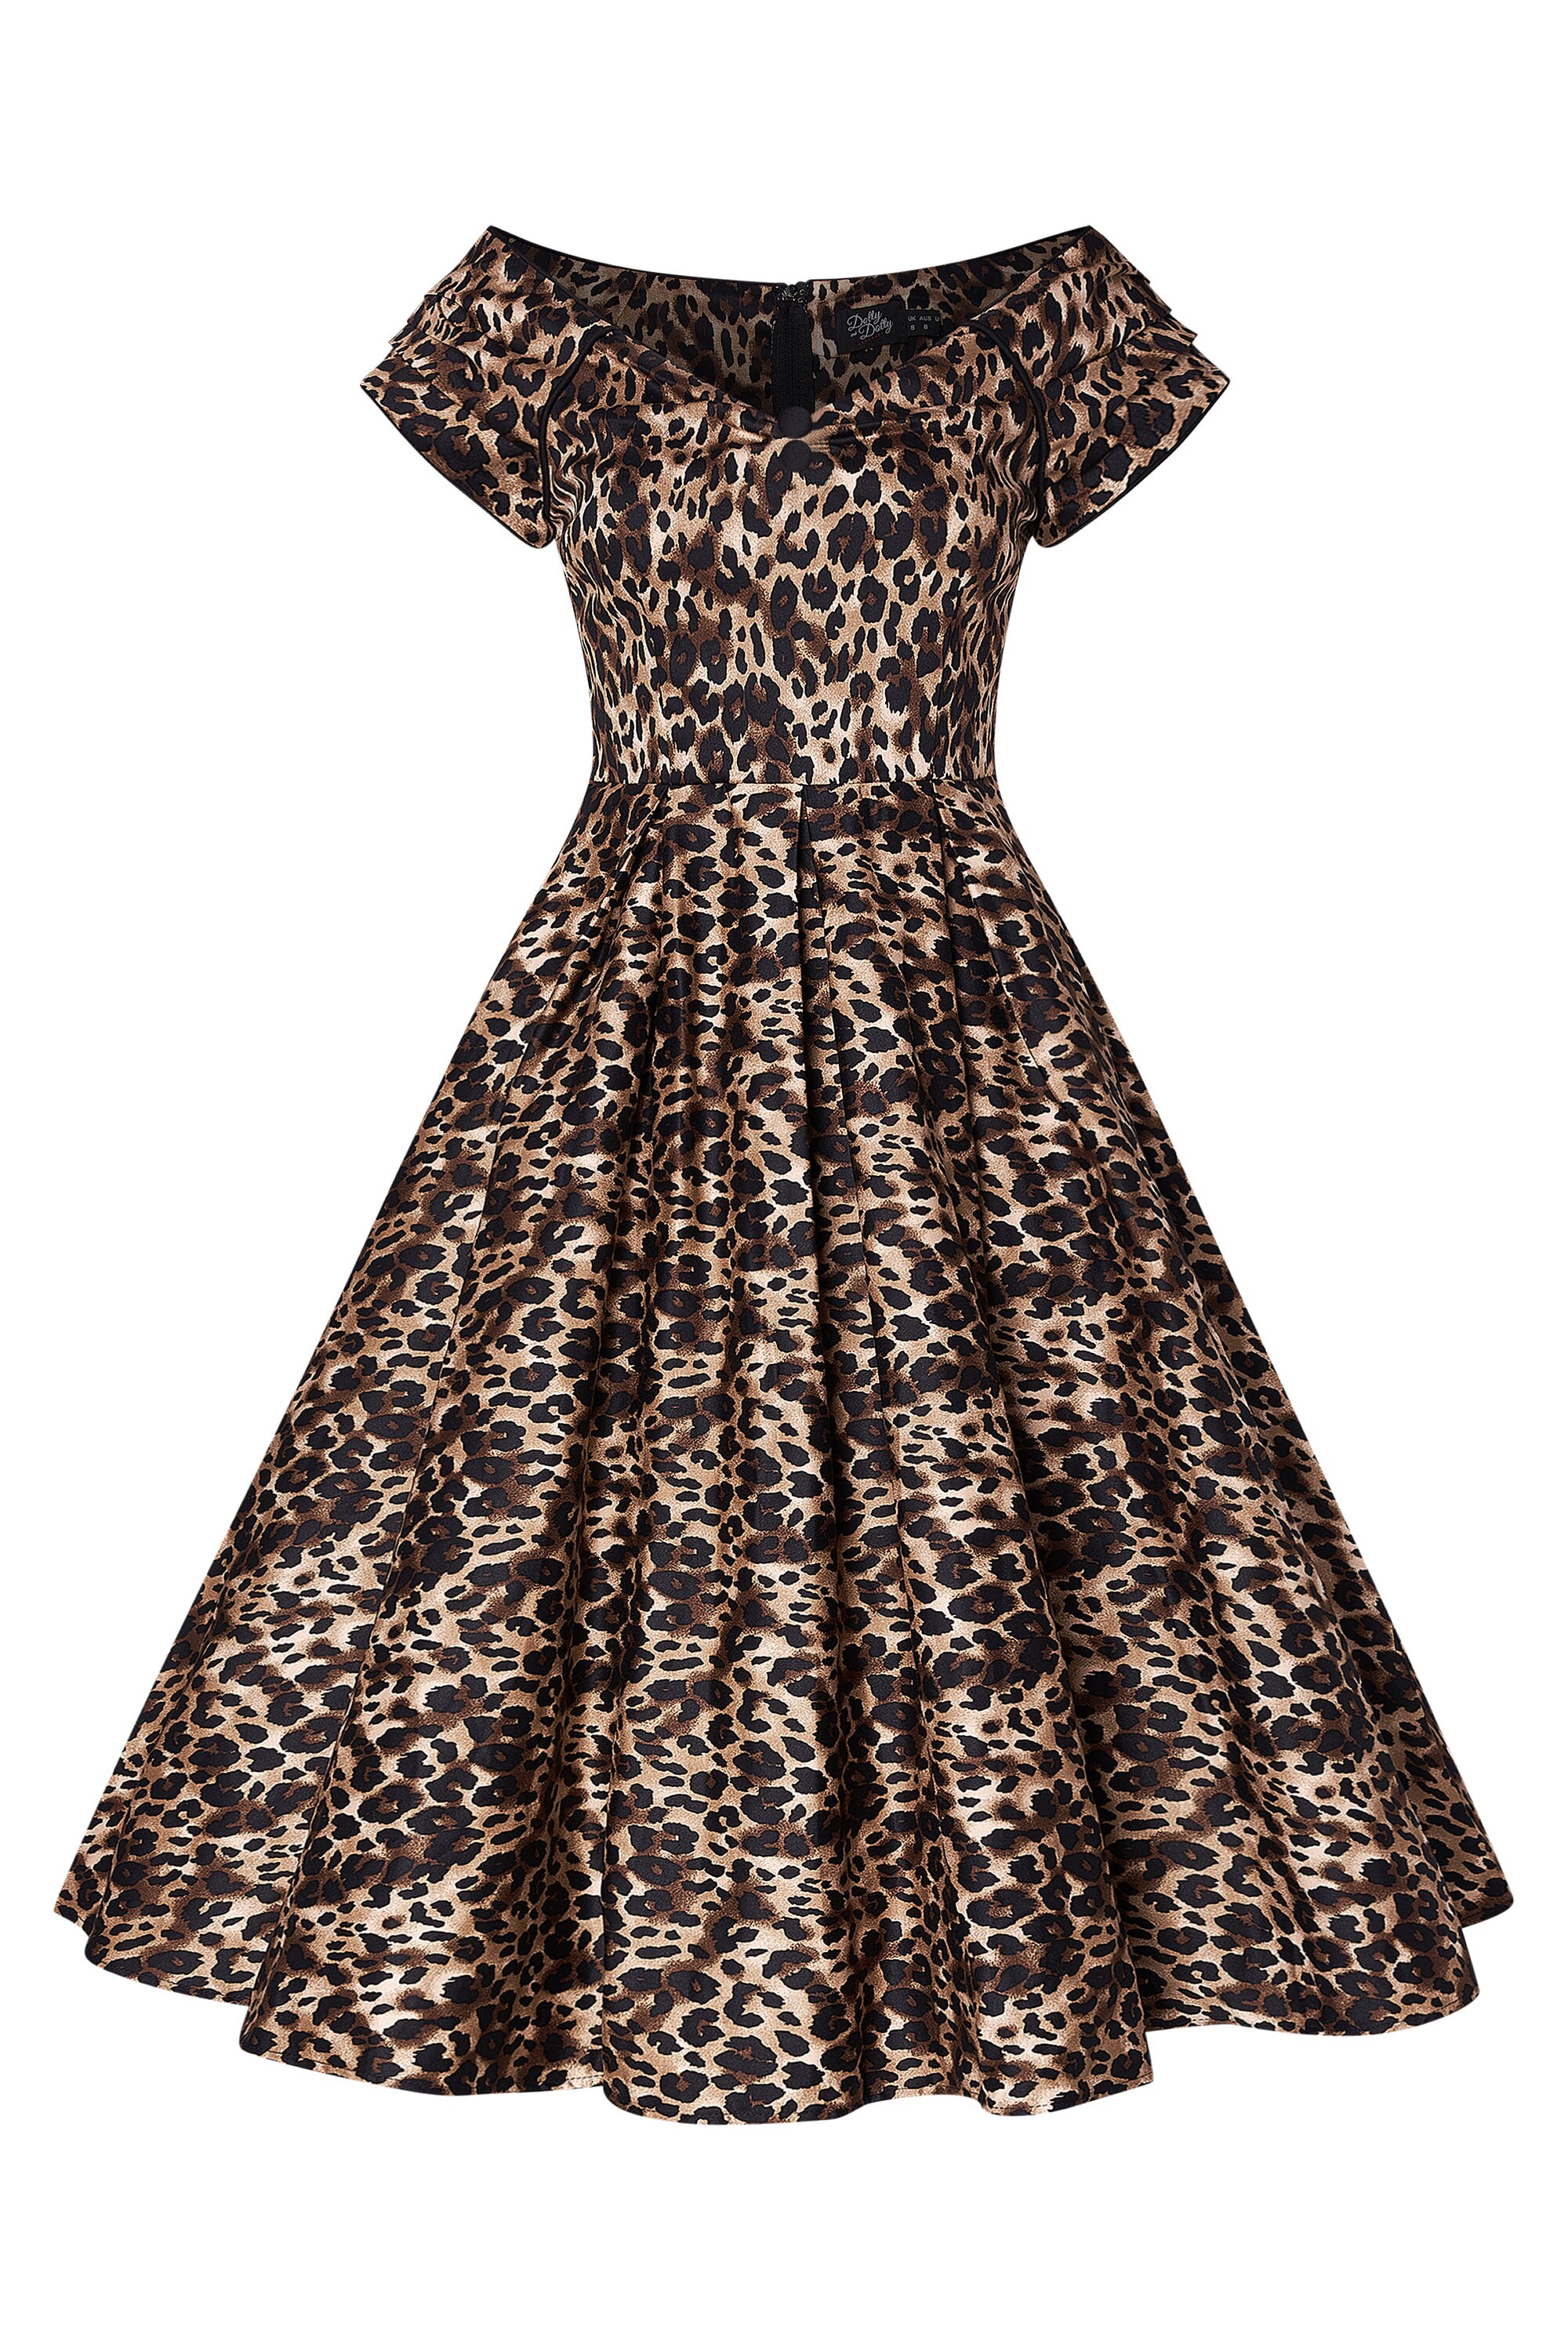 Leopard Print off Shoulder Dress | Etsy